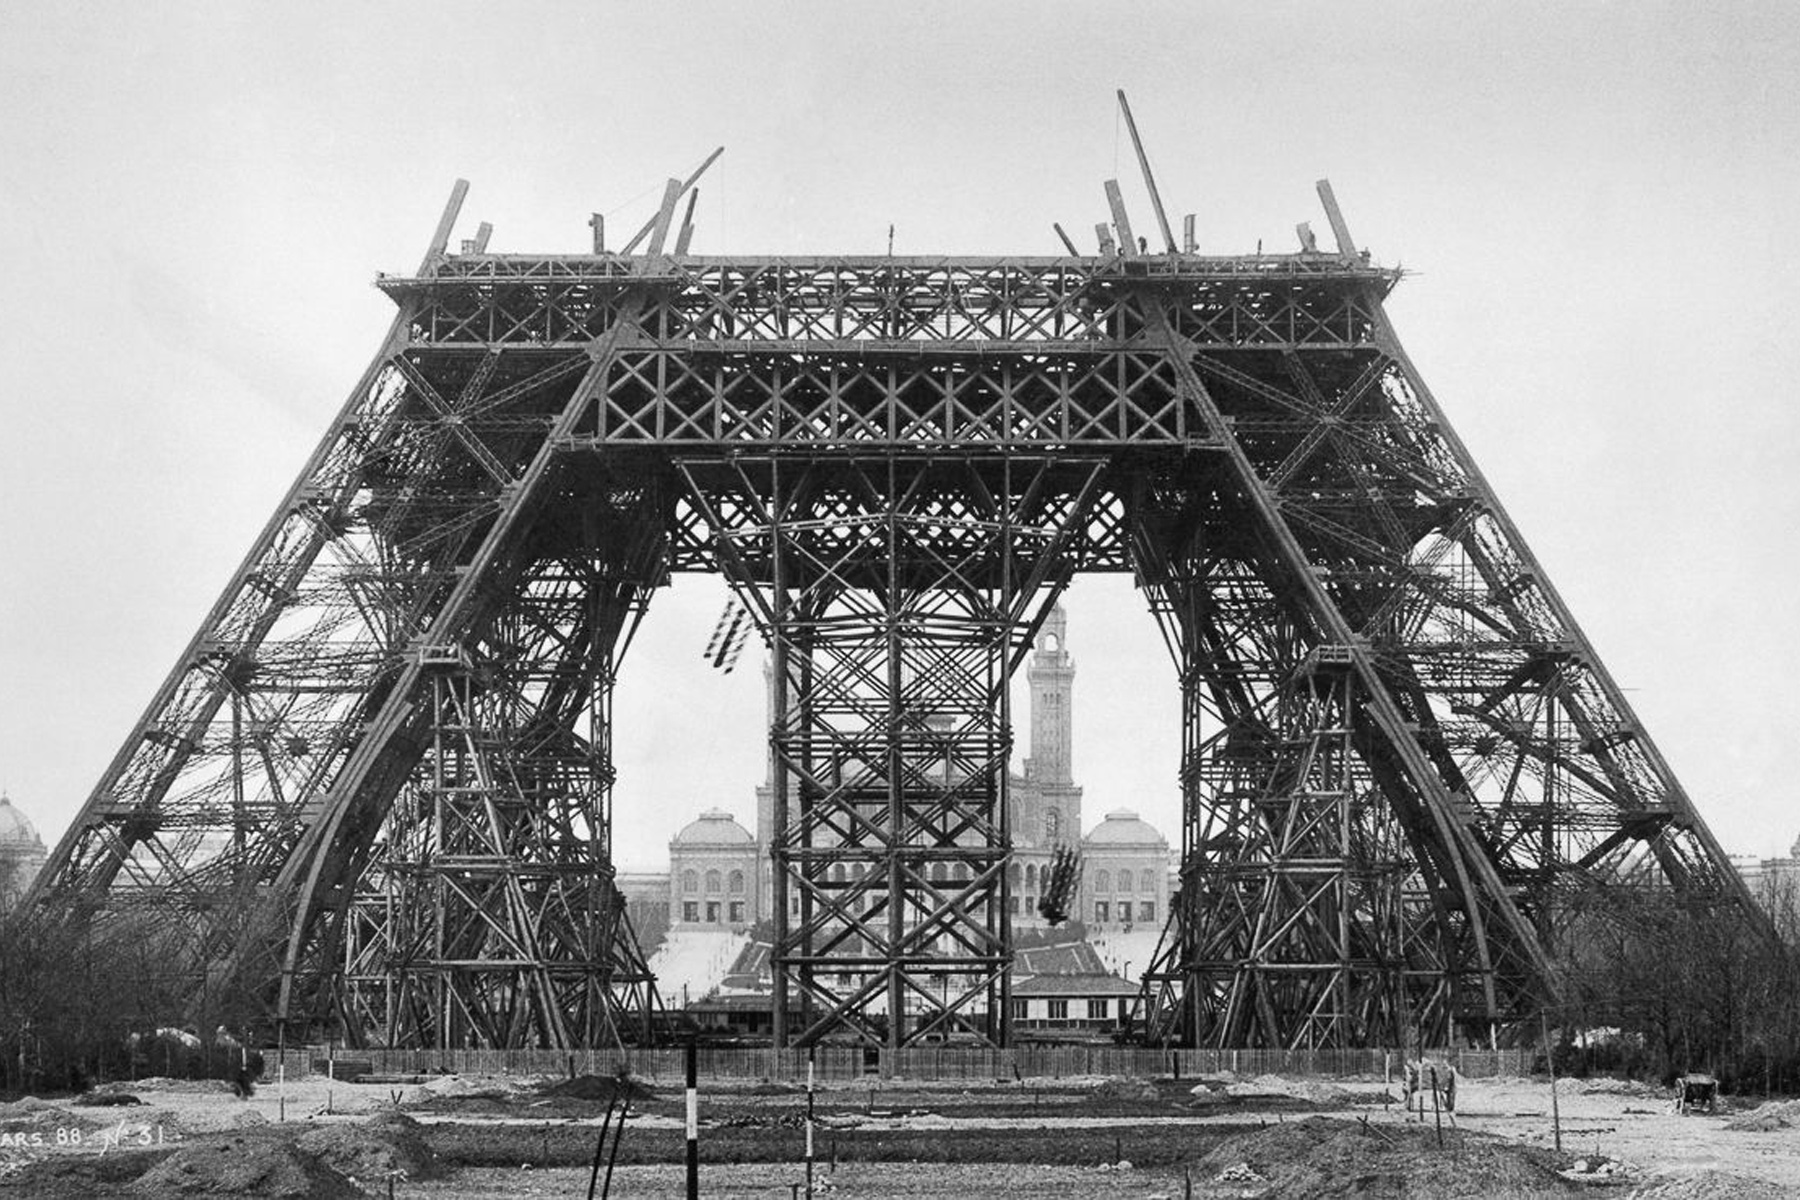 Ретрофото самой романтичной достопримечательности на Земле: как строили Эйфелеву башню 130 лет назад башня, влюбленных, Парижа, достопримечательности, сделать, во всем, 15 марта, и сразу, строительства, во время, Эйфелева, выглядела, Вы увидите, парочек, целующихся, не будет, мы с вами, Здесь, фотоподборку, нетипичную